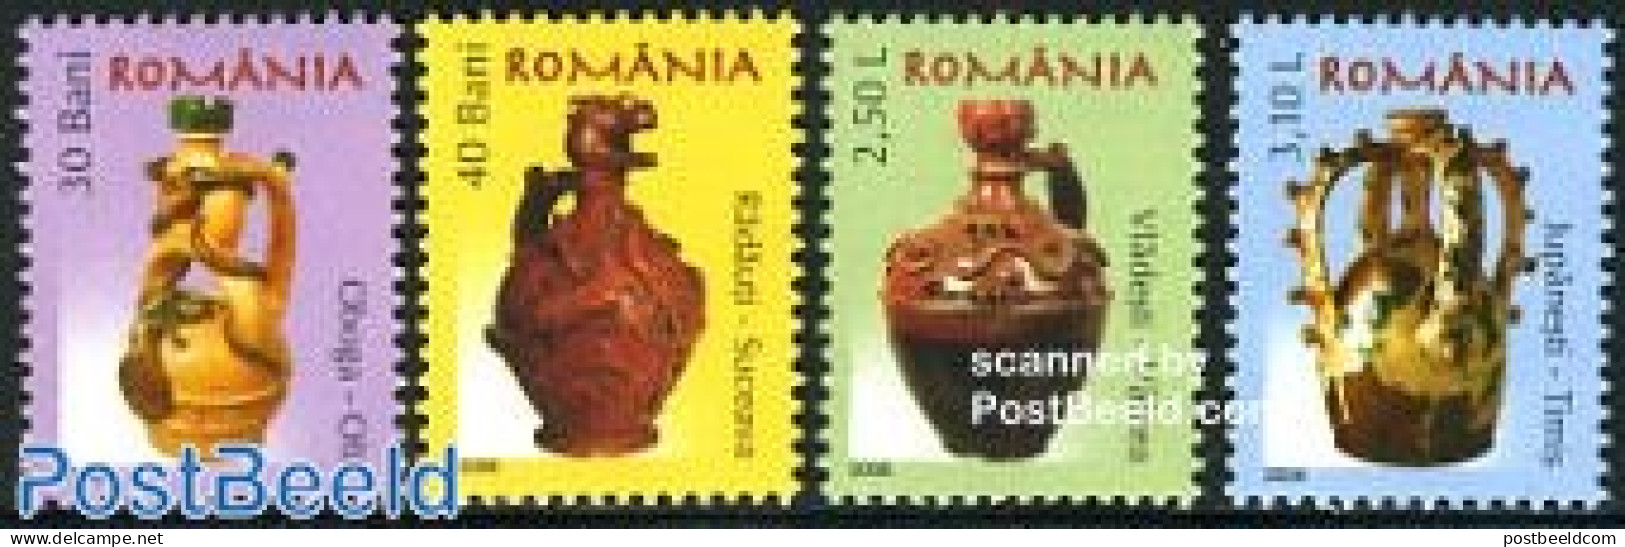 Romania 2006 Definitives, Creamics 4v, Mint NH, Art - Art & Antique Objects - Ceramics - Ongebruikt